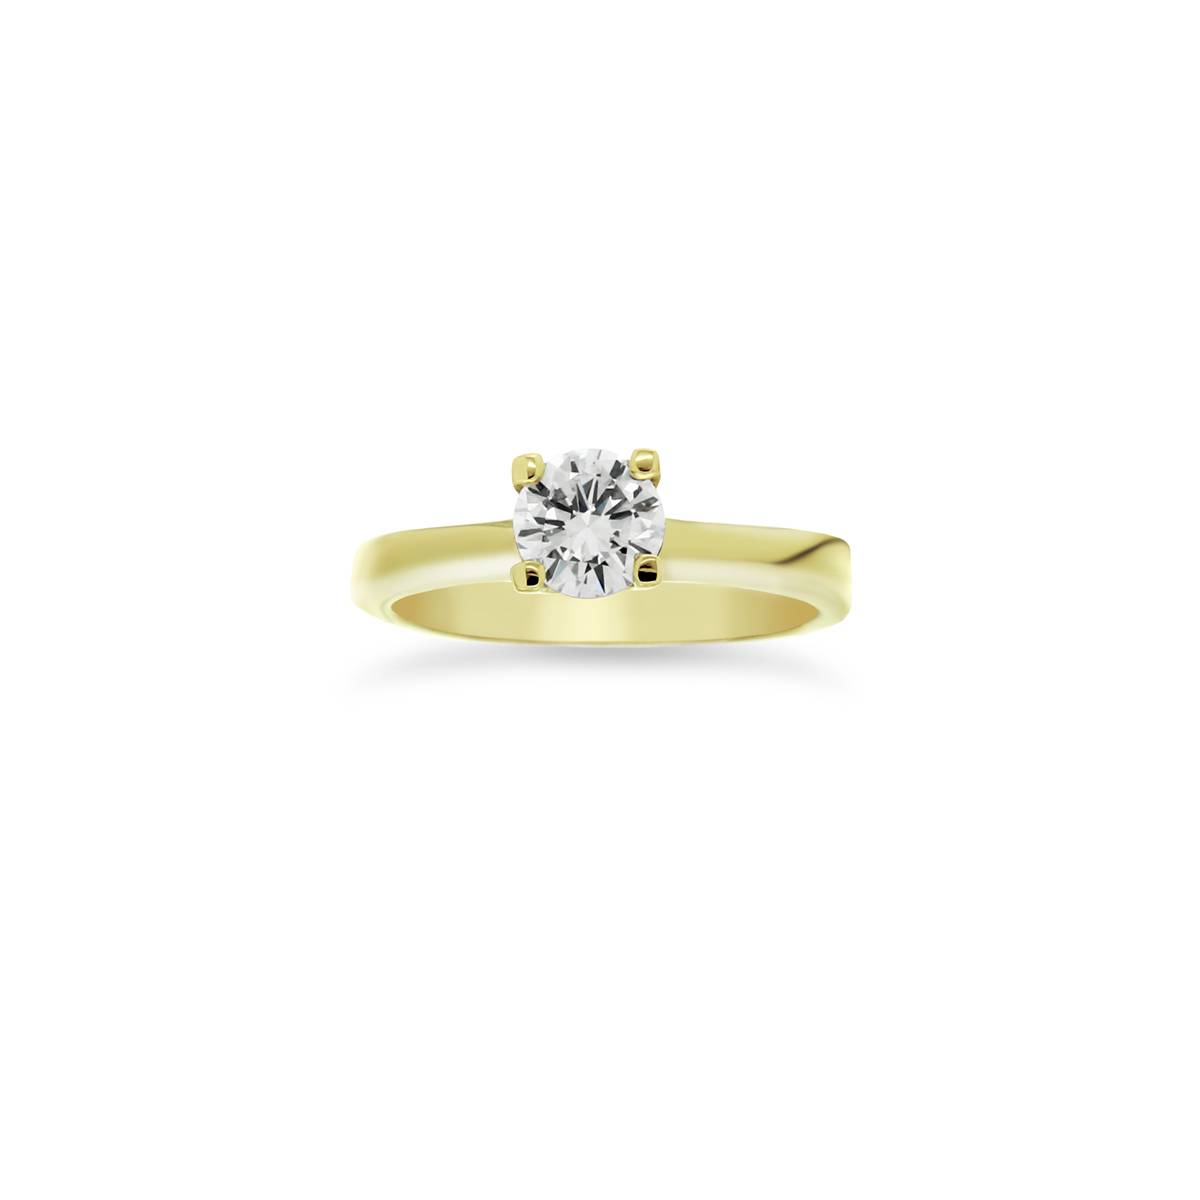 Sárga arany solitaire gyűrű gyémánt kővel